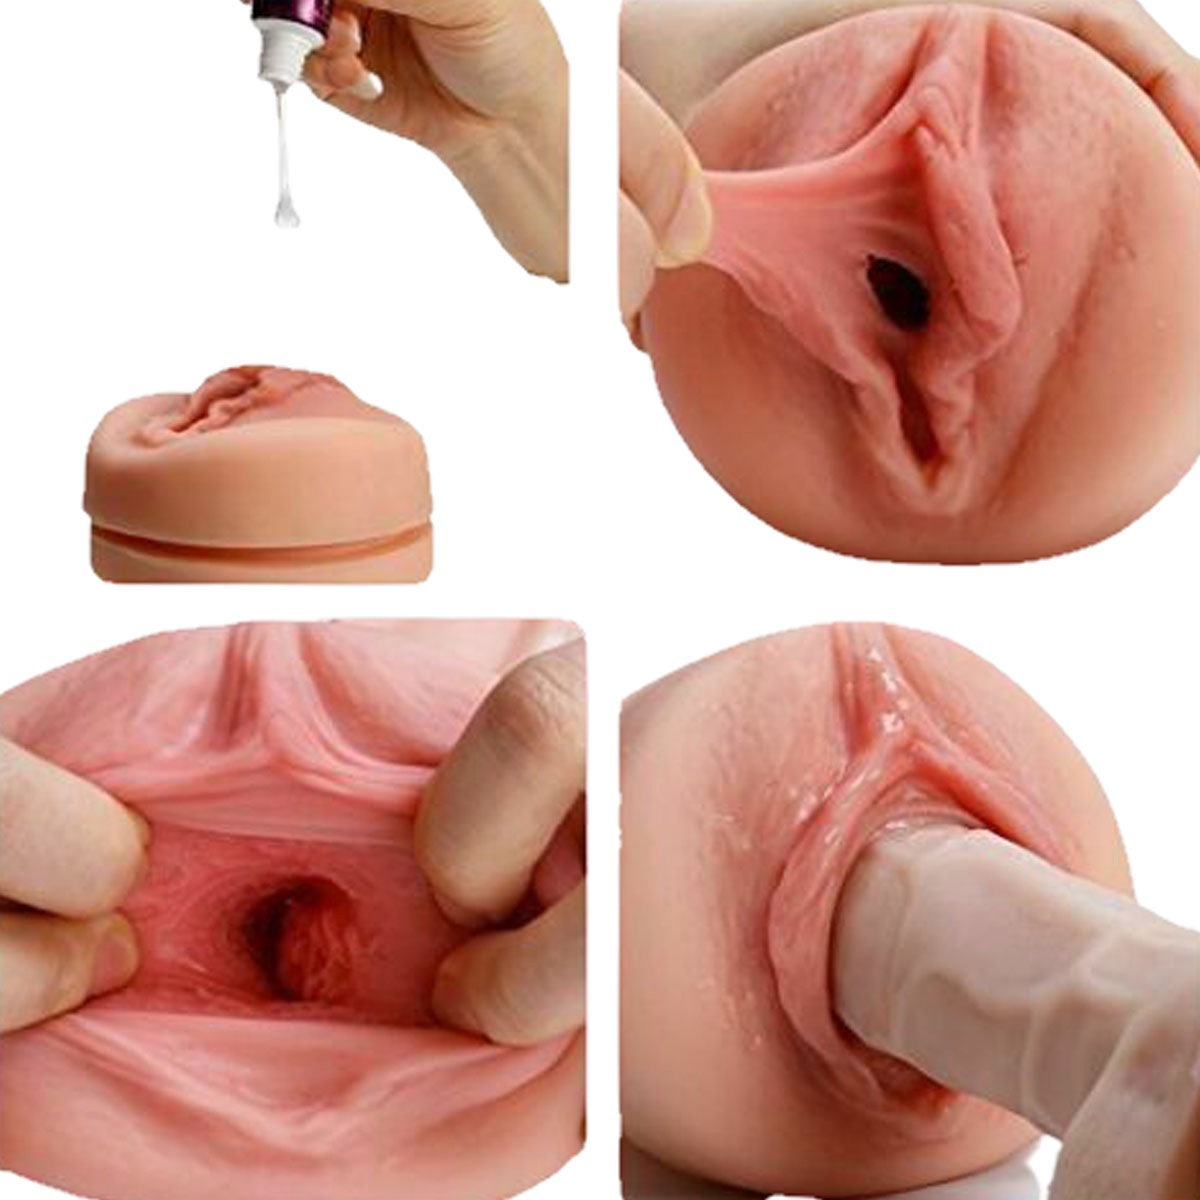 мастурбация искусственными вагинами фото 6